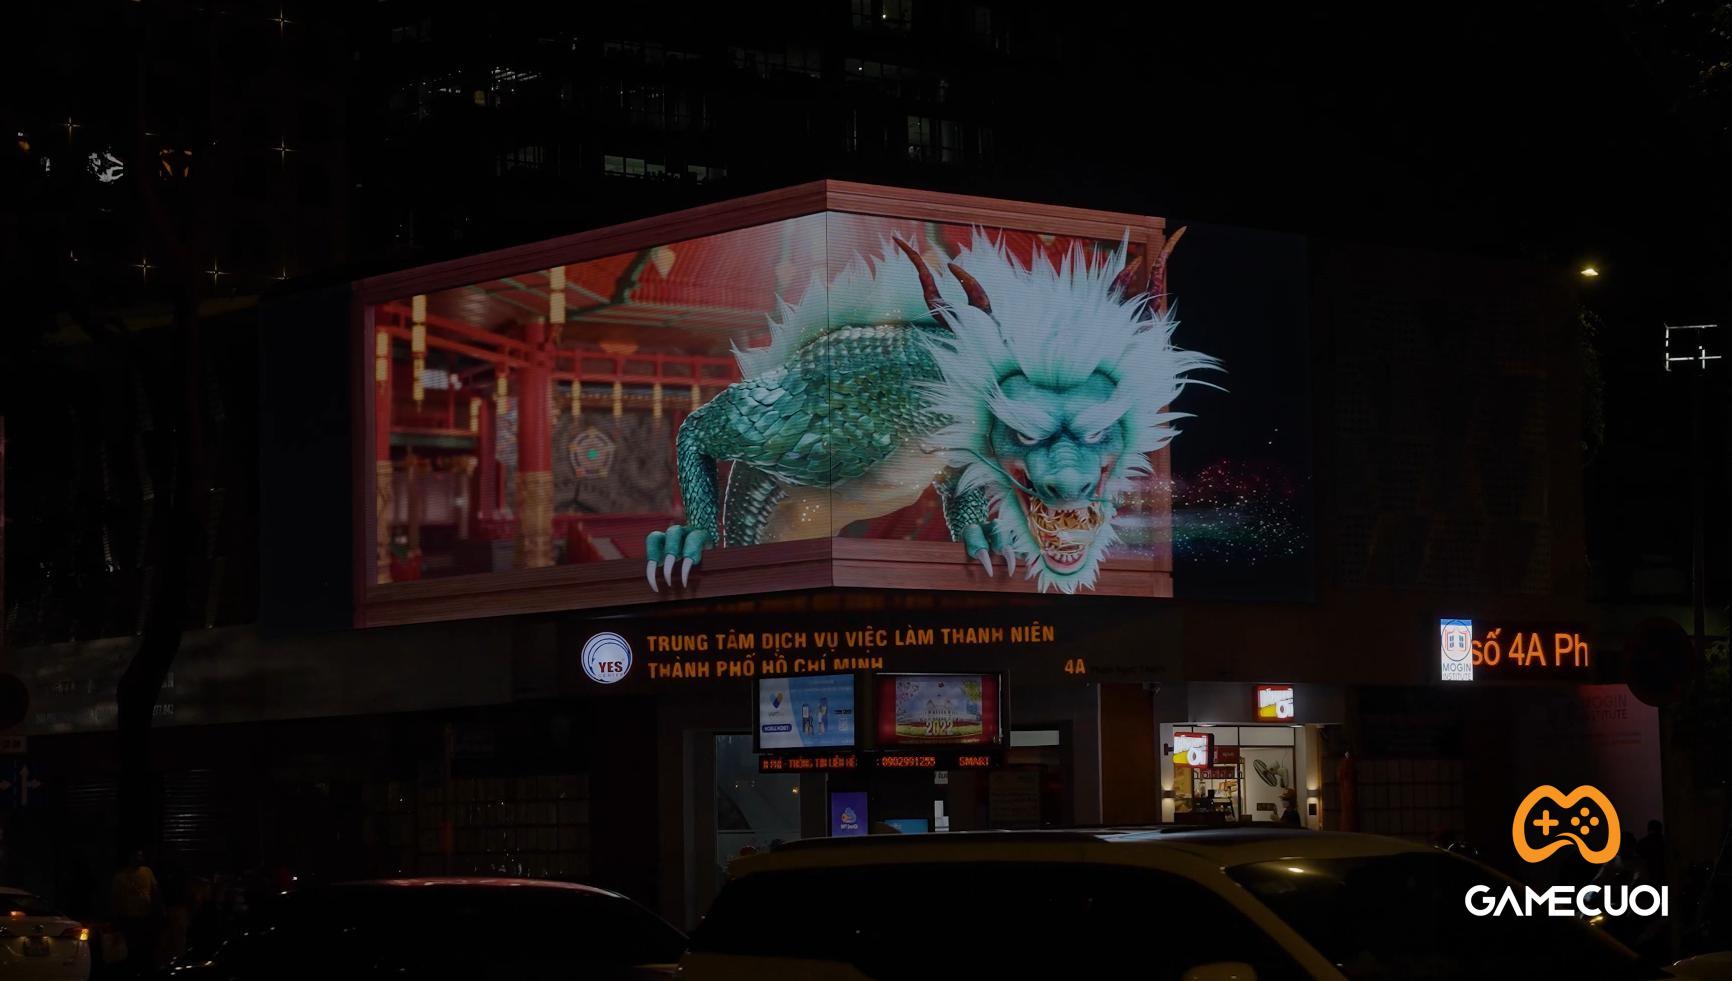 Võ Lâm Truyền Kỳ “chơi lớn” với biển quảng cáo 3D giữa trung tâm Sài Gòn